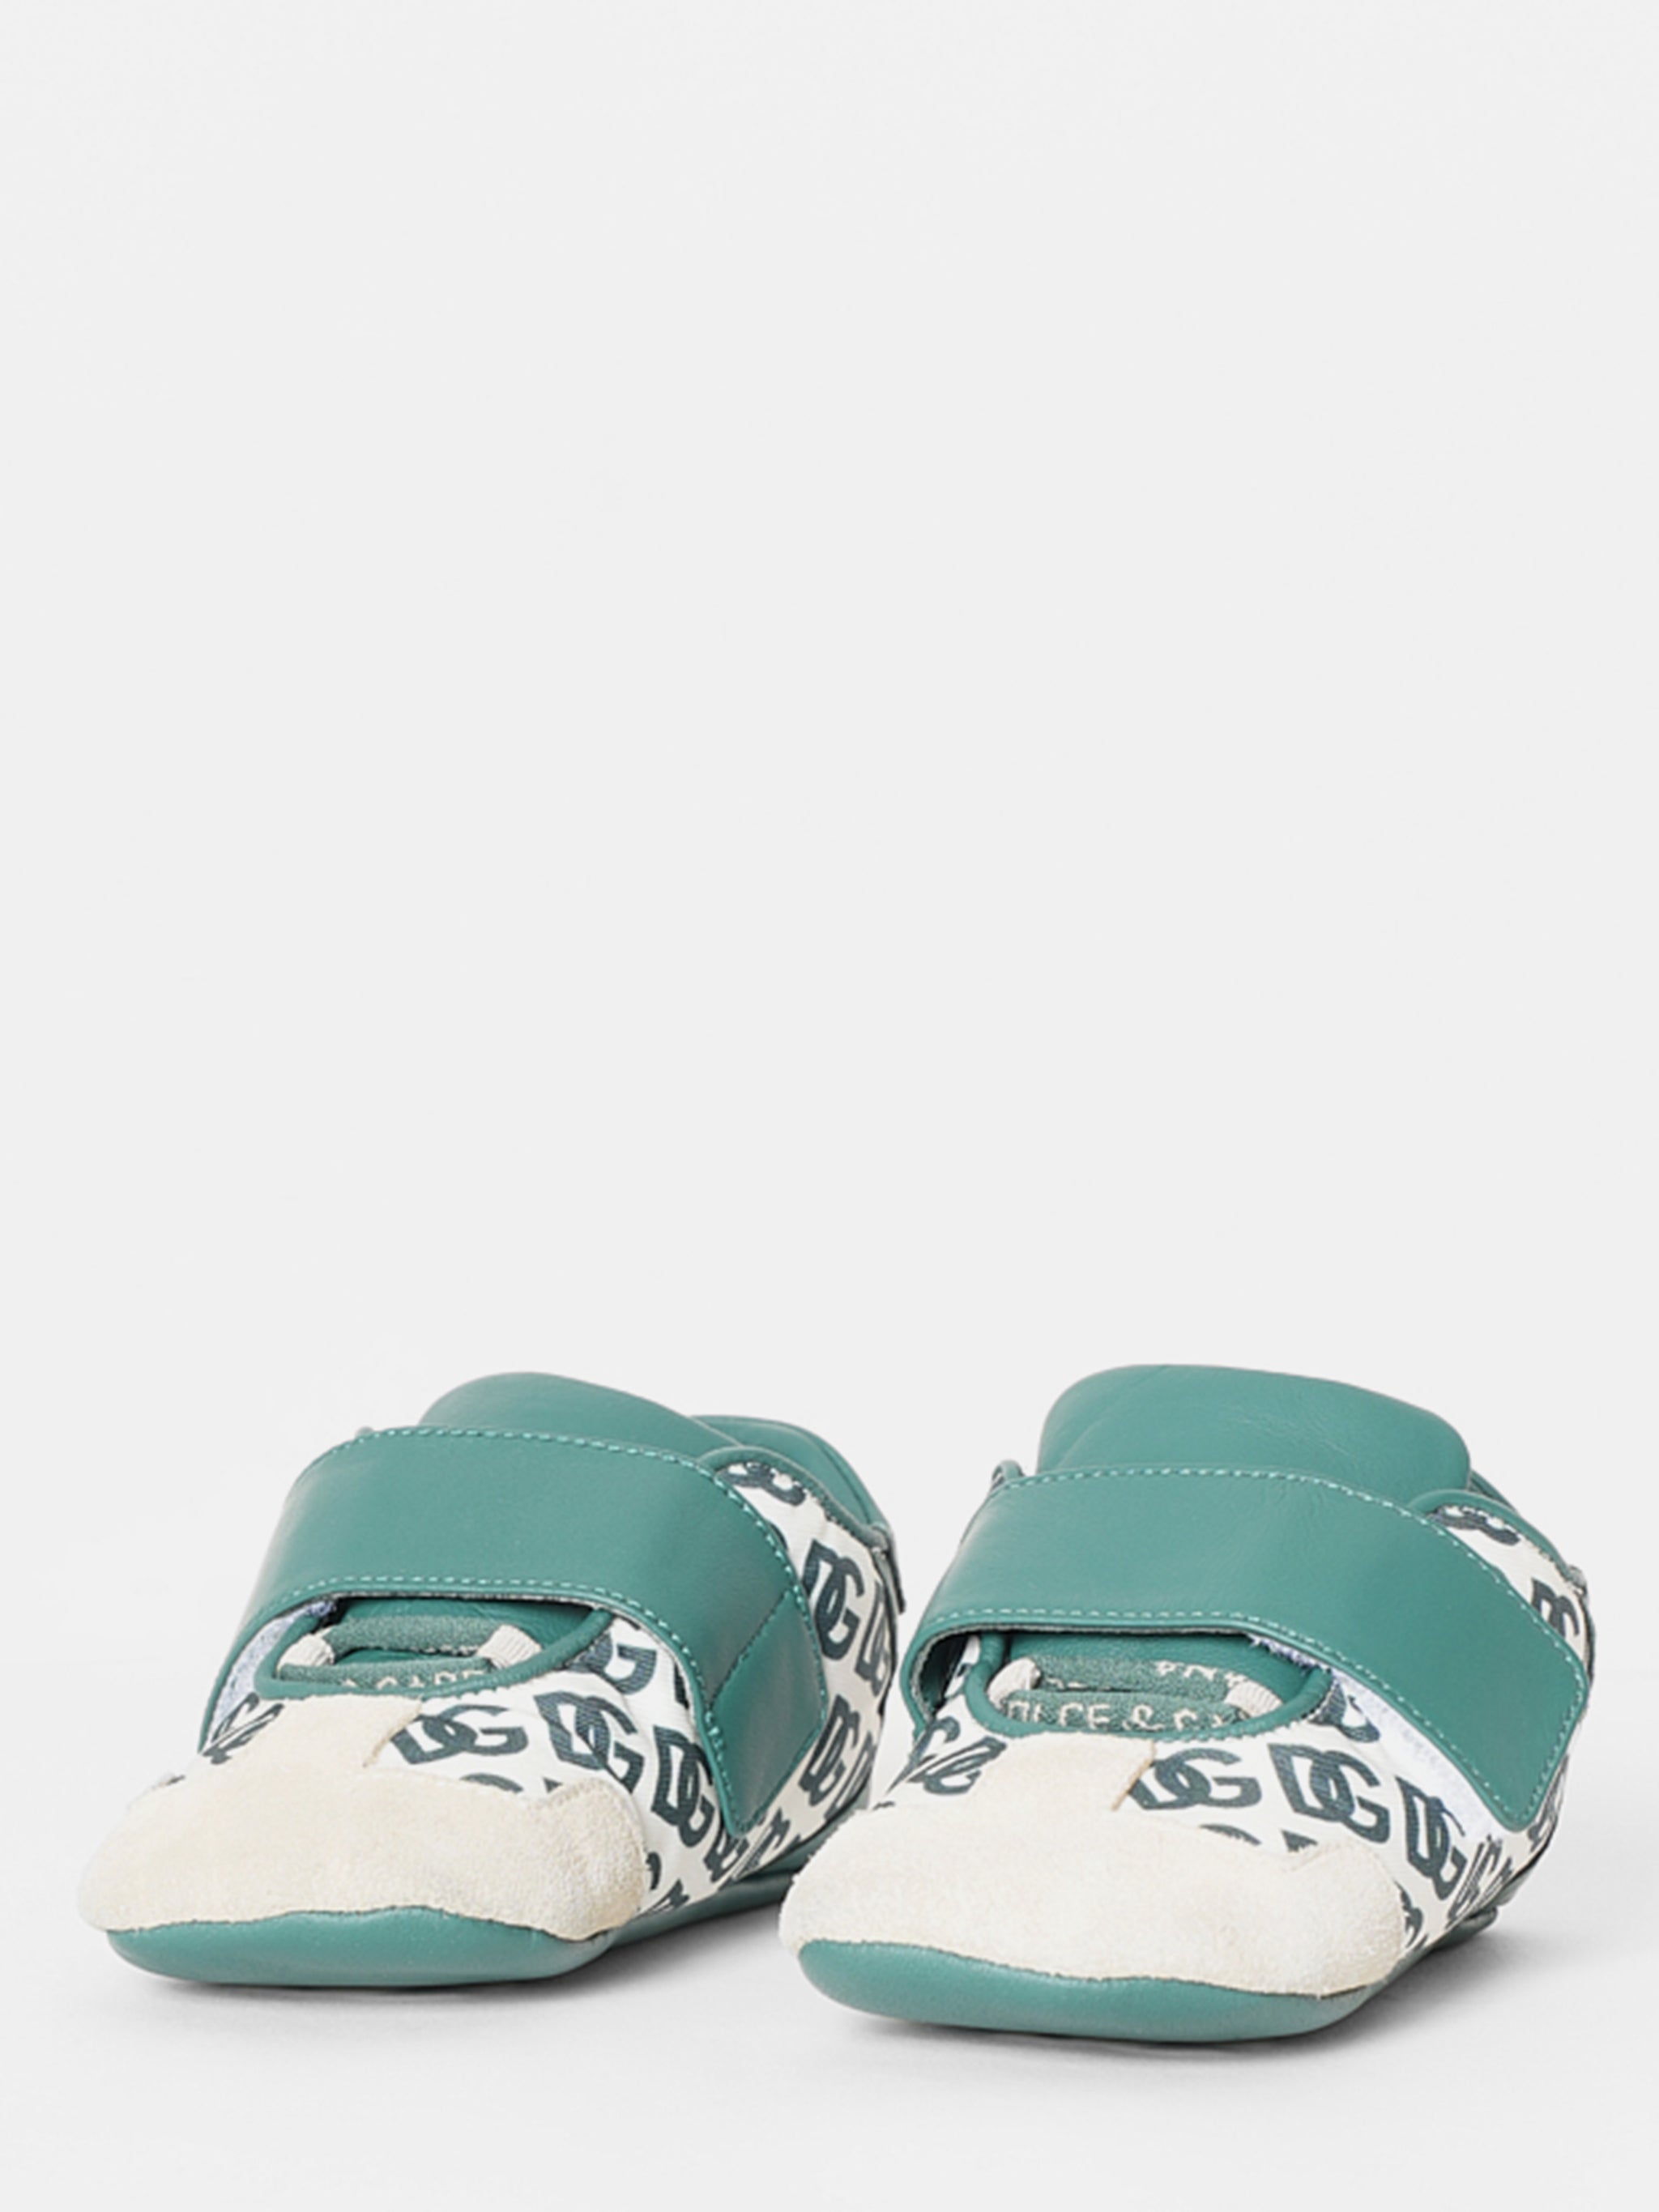 Dolce & Gabbana Green Crib Shoes